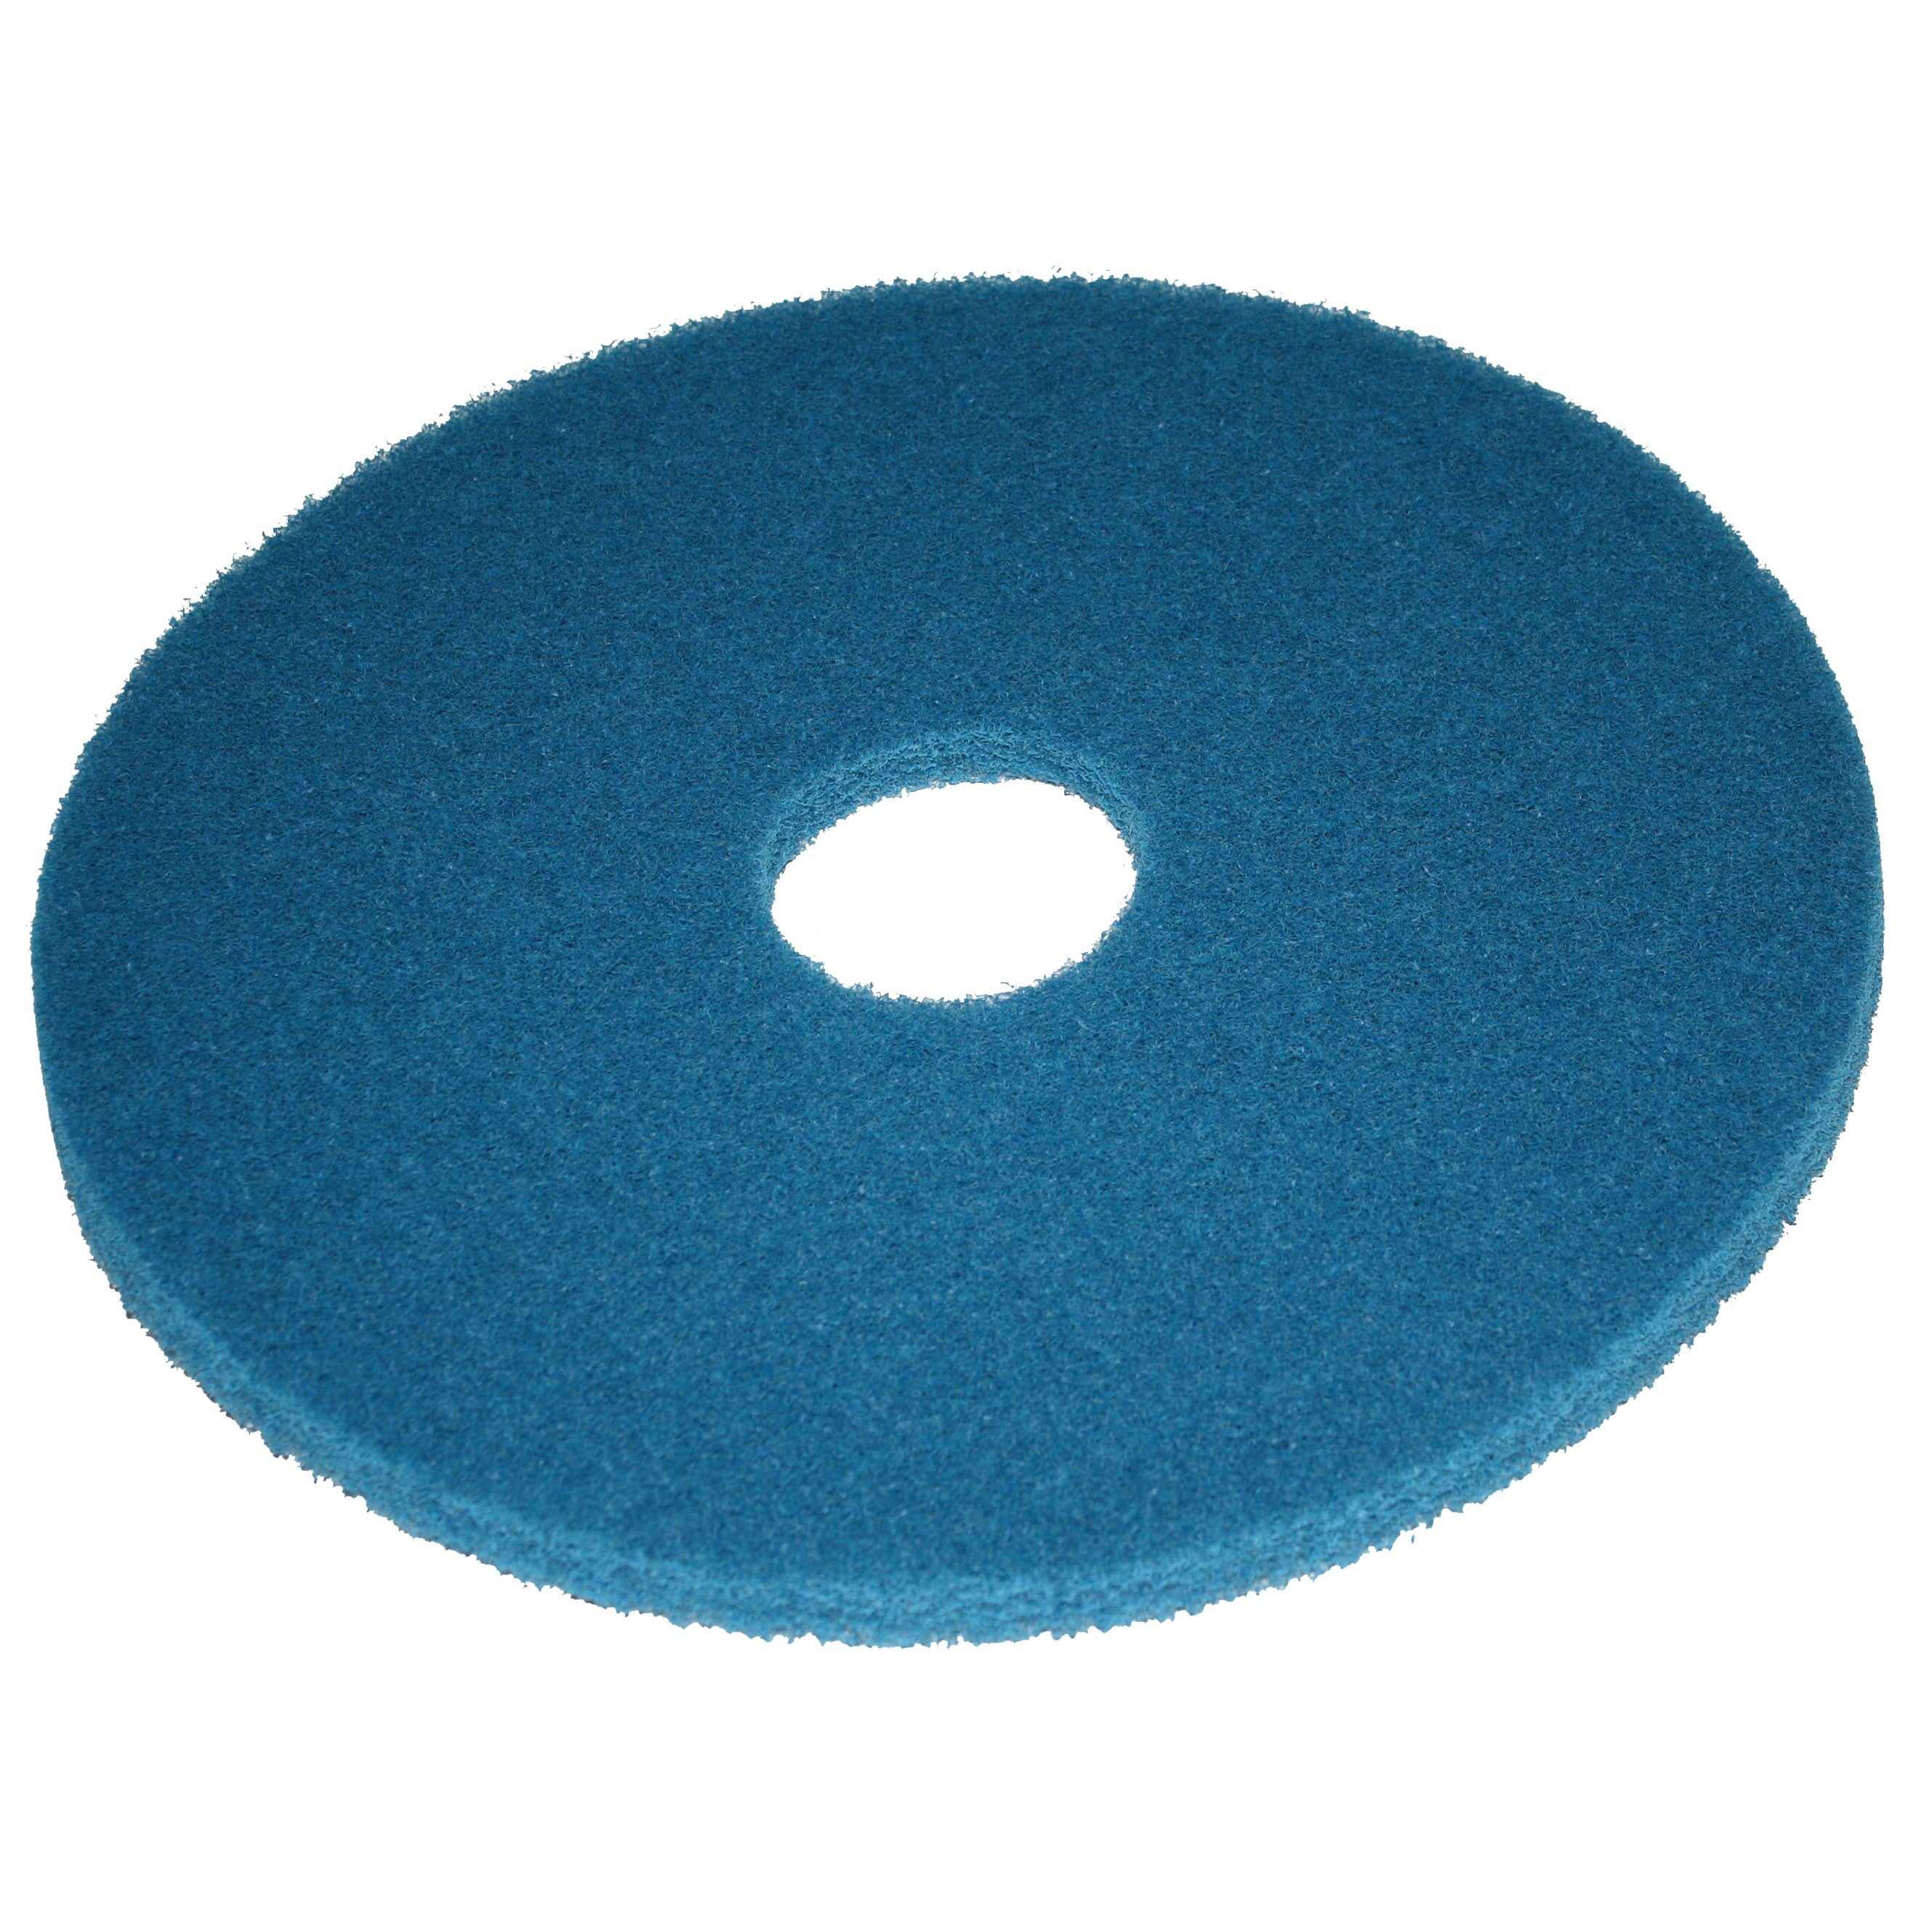 Pad bleu, Ø 165 mm, polyester